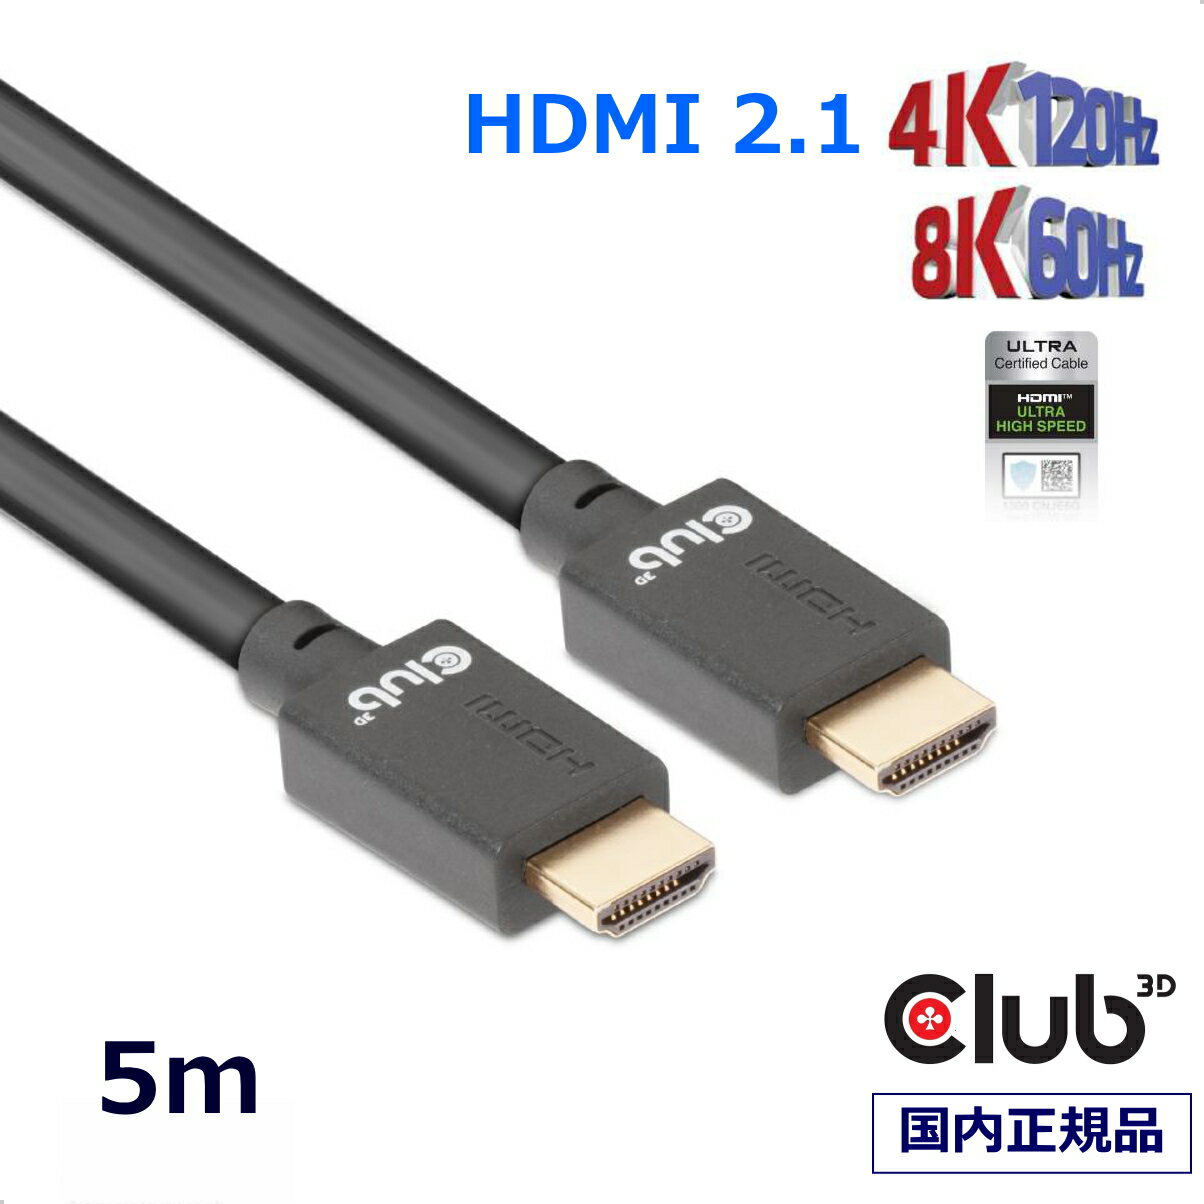 国内正規品 Club3D HDMI 2.1 4K120Hz 8K60Hz 48Gbps Male/Male 5m Ultra ウルトラ ハイスピード 認証ケーブル (CAC-1375)